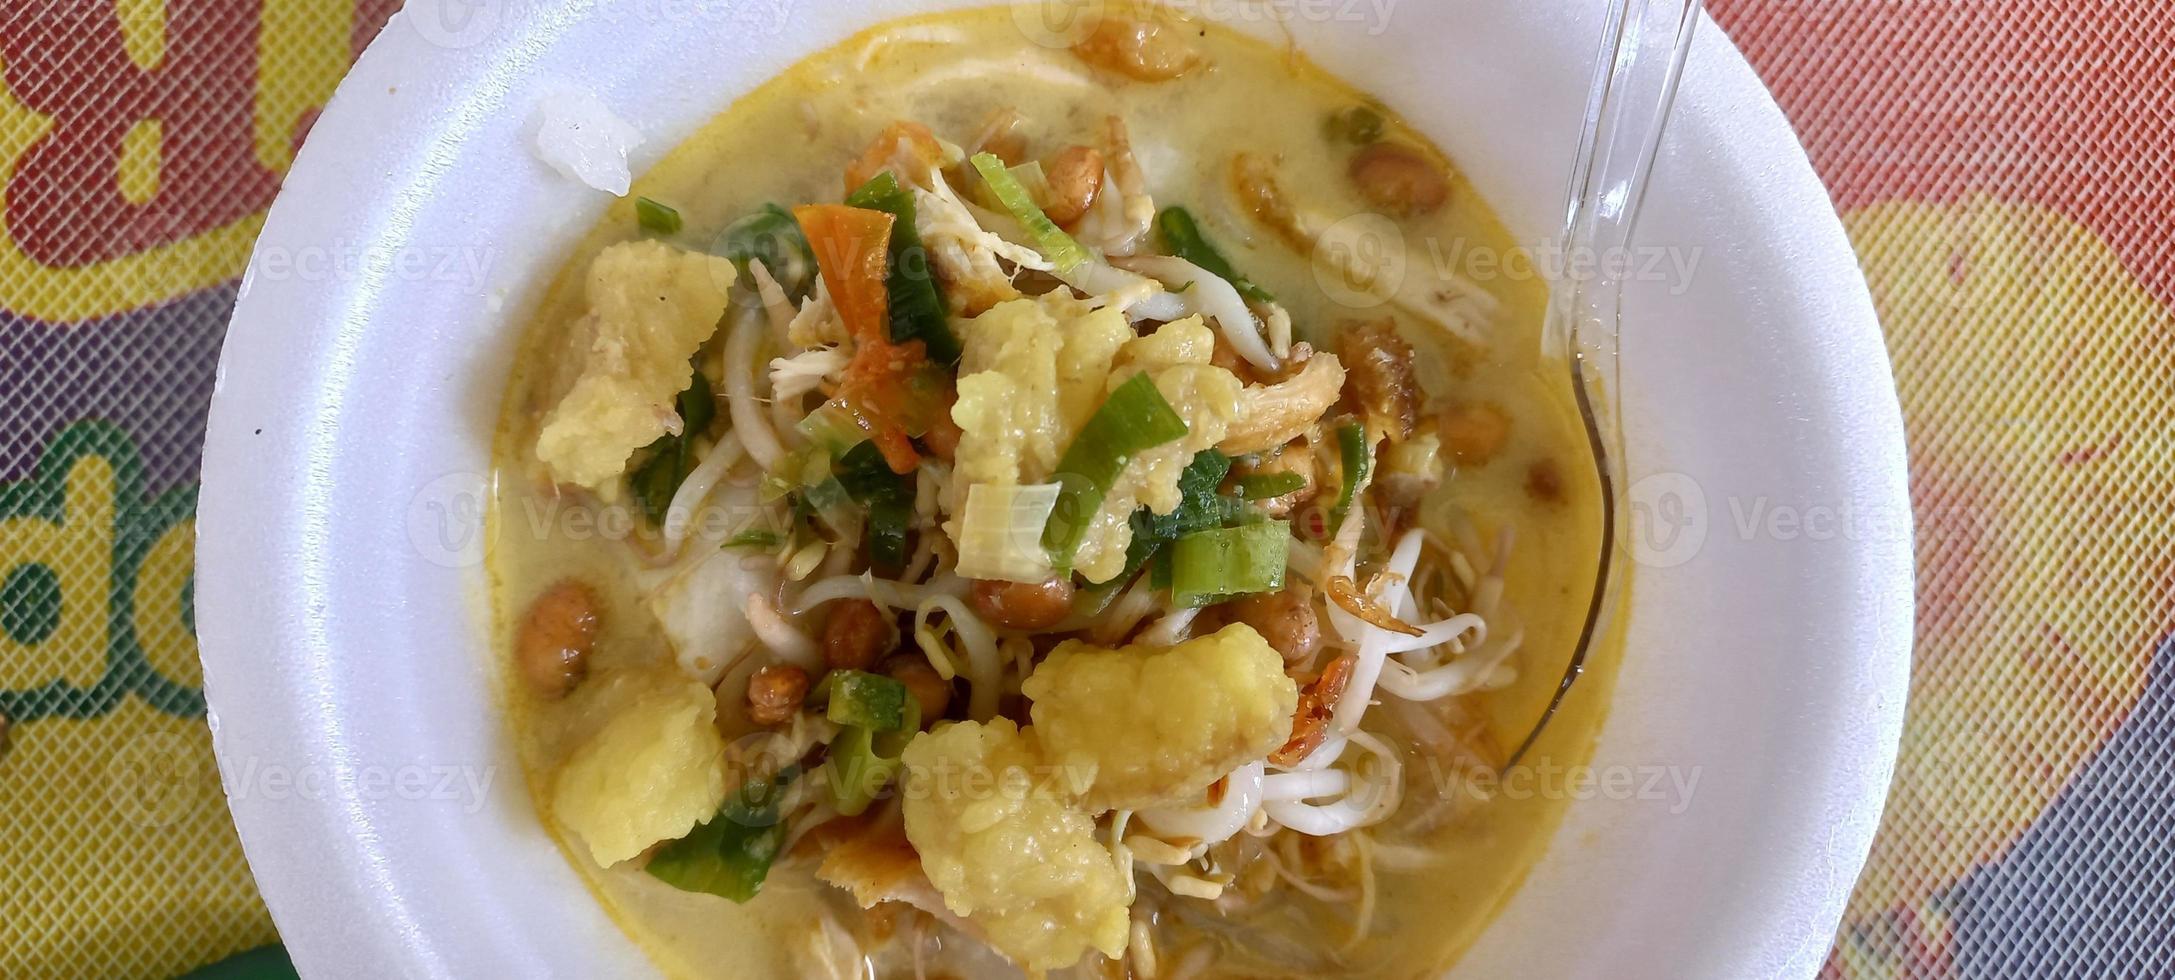 kyckling soto är en traditionell soppa mat från indonesien foto